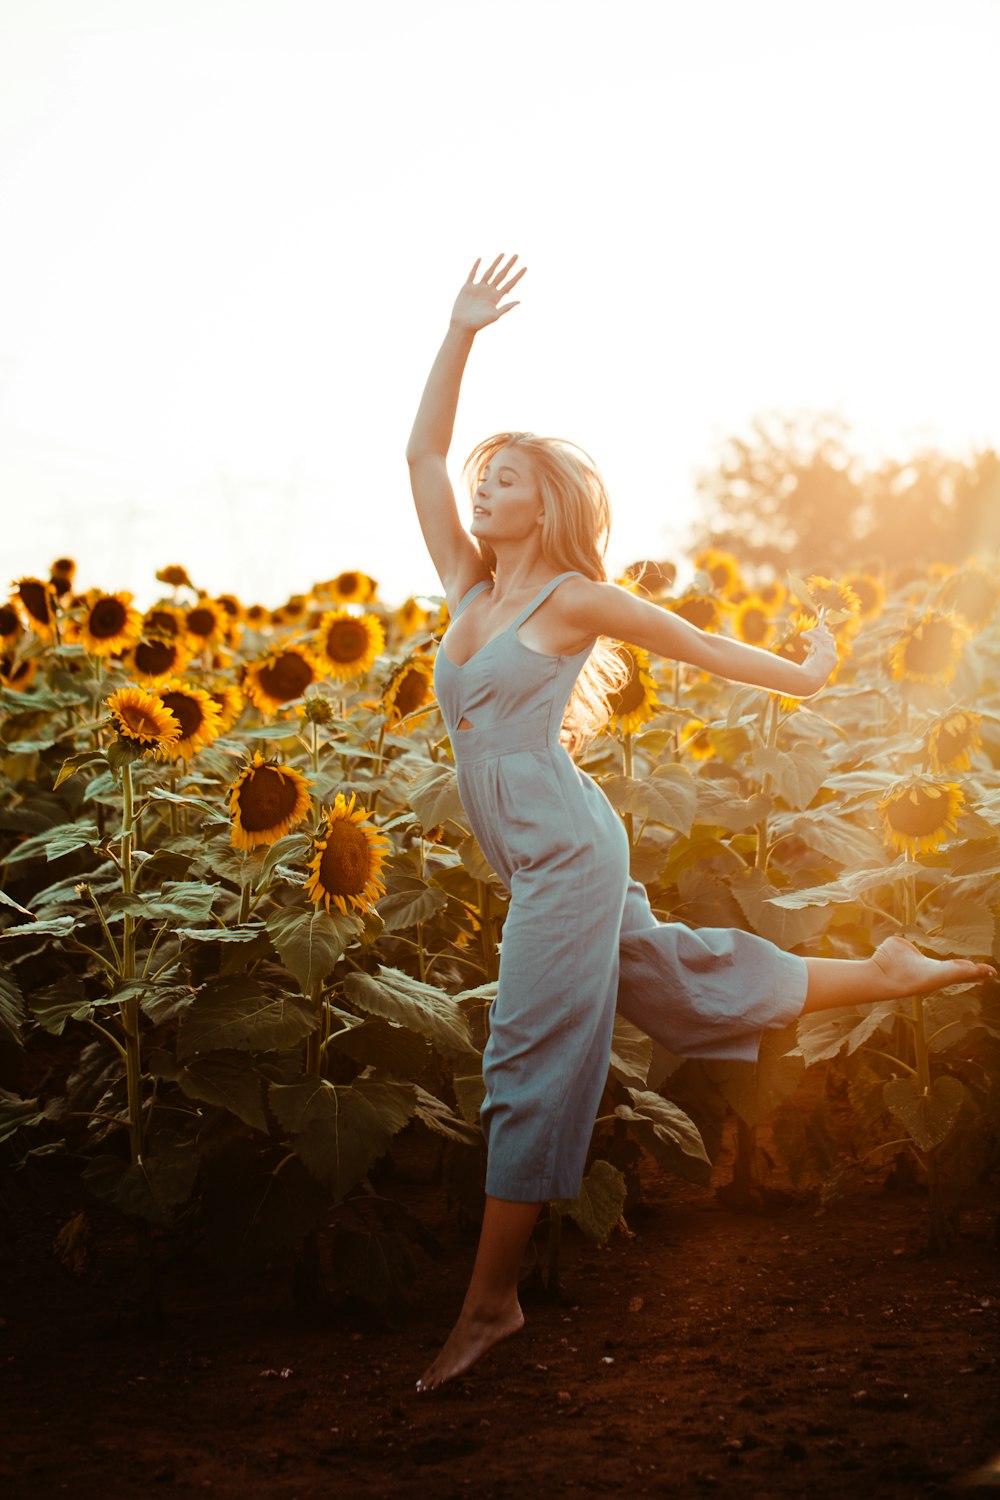 Nahaufnahme einer Frau, die während der goldenen Stunde neben einem Sonnenblumenfeld tanzt